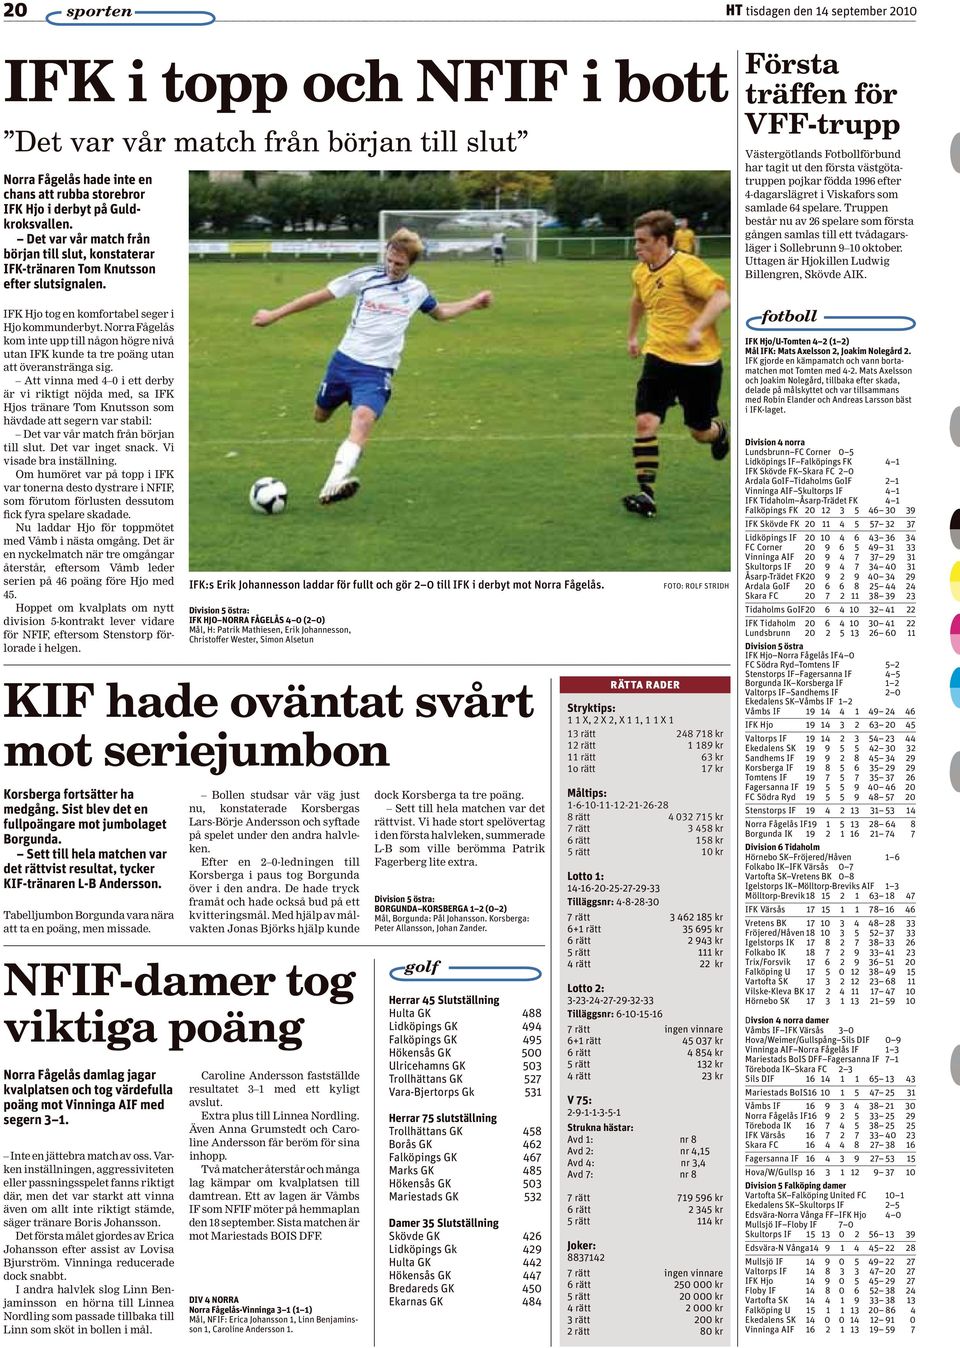 Norra Fågelås kom inte upp till någon högre nivå utan IFK kunde ta tre poäng utan att överanstränga sig.